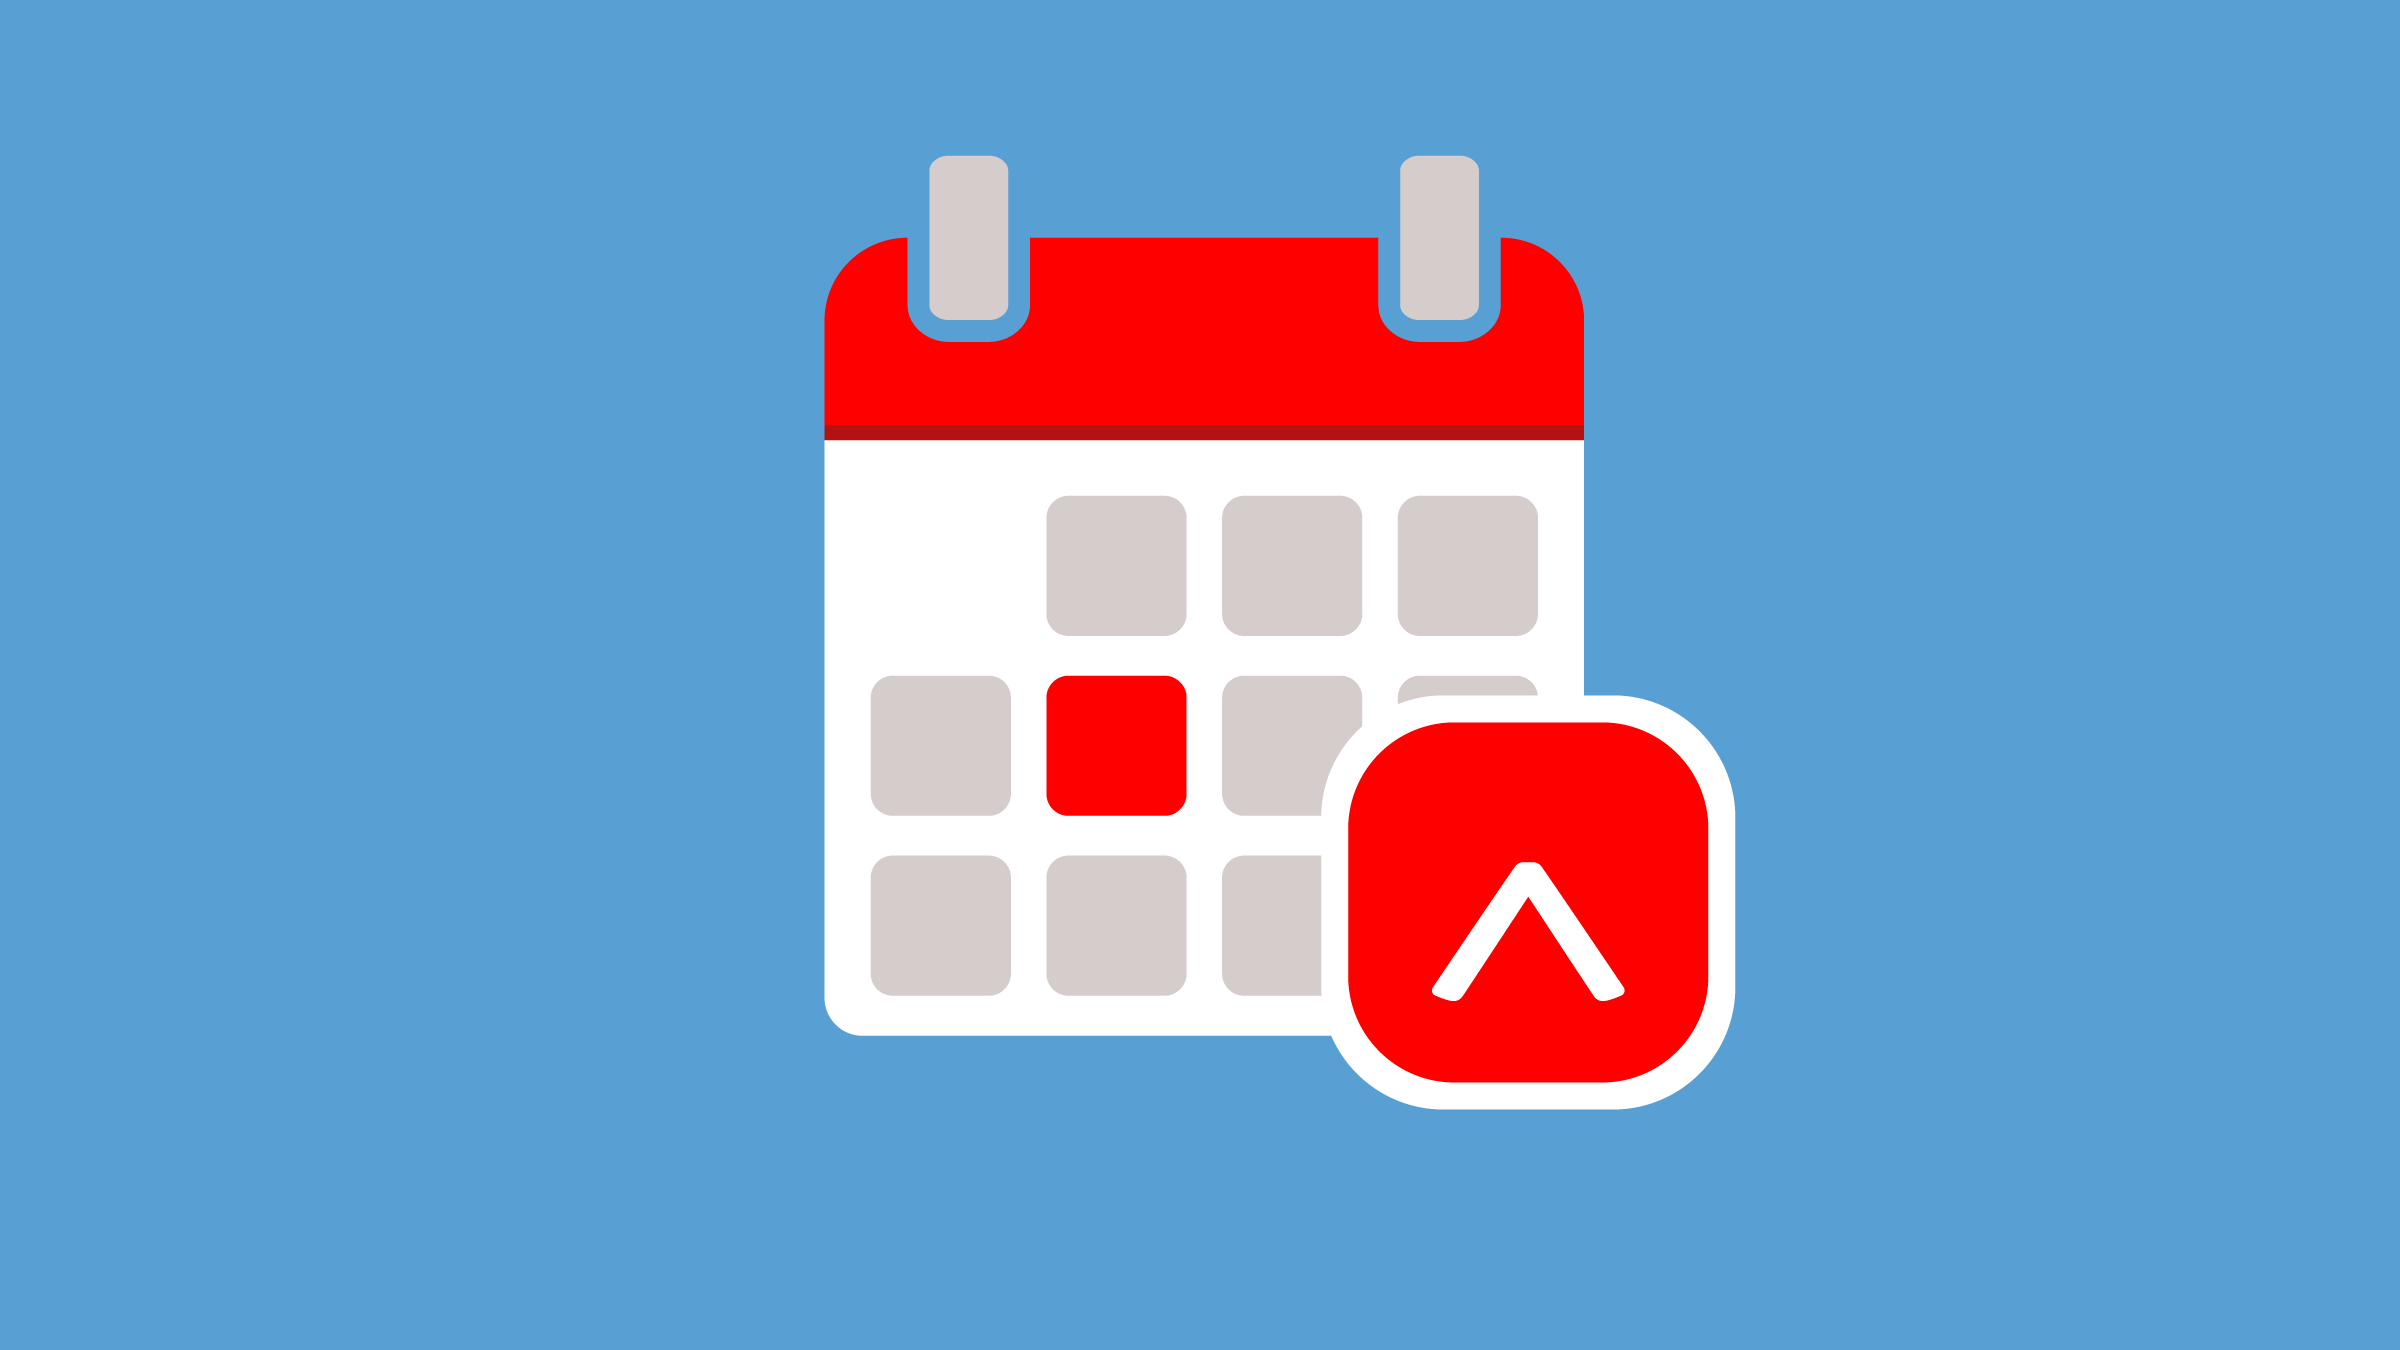 Sur un fond bleu, le logo avec le caret de Réviseurs Canada apparaît en face d’une page de calendrier blanche sur laquelle on voit une date surlignée en rouge.